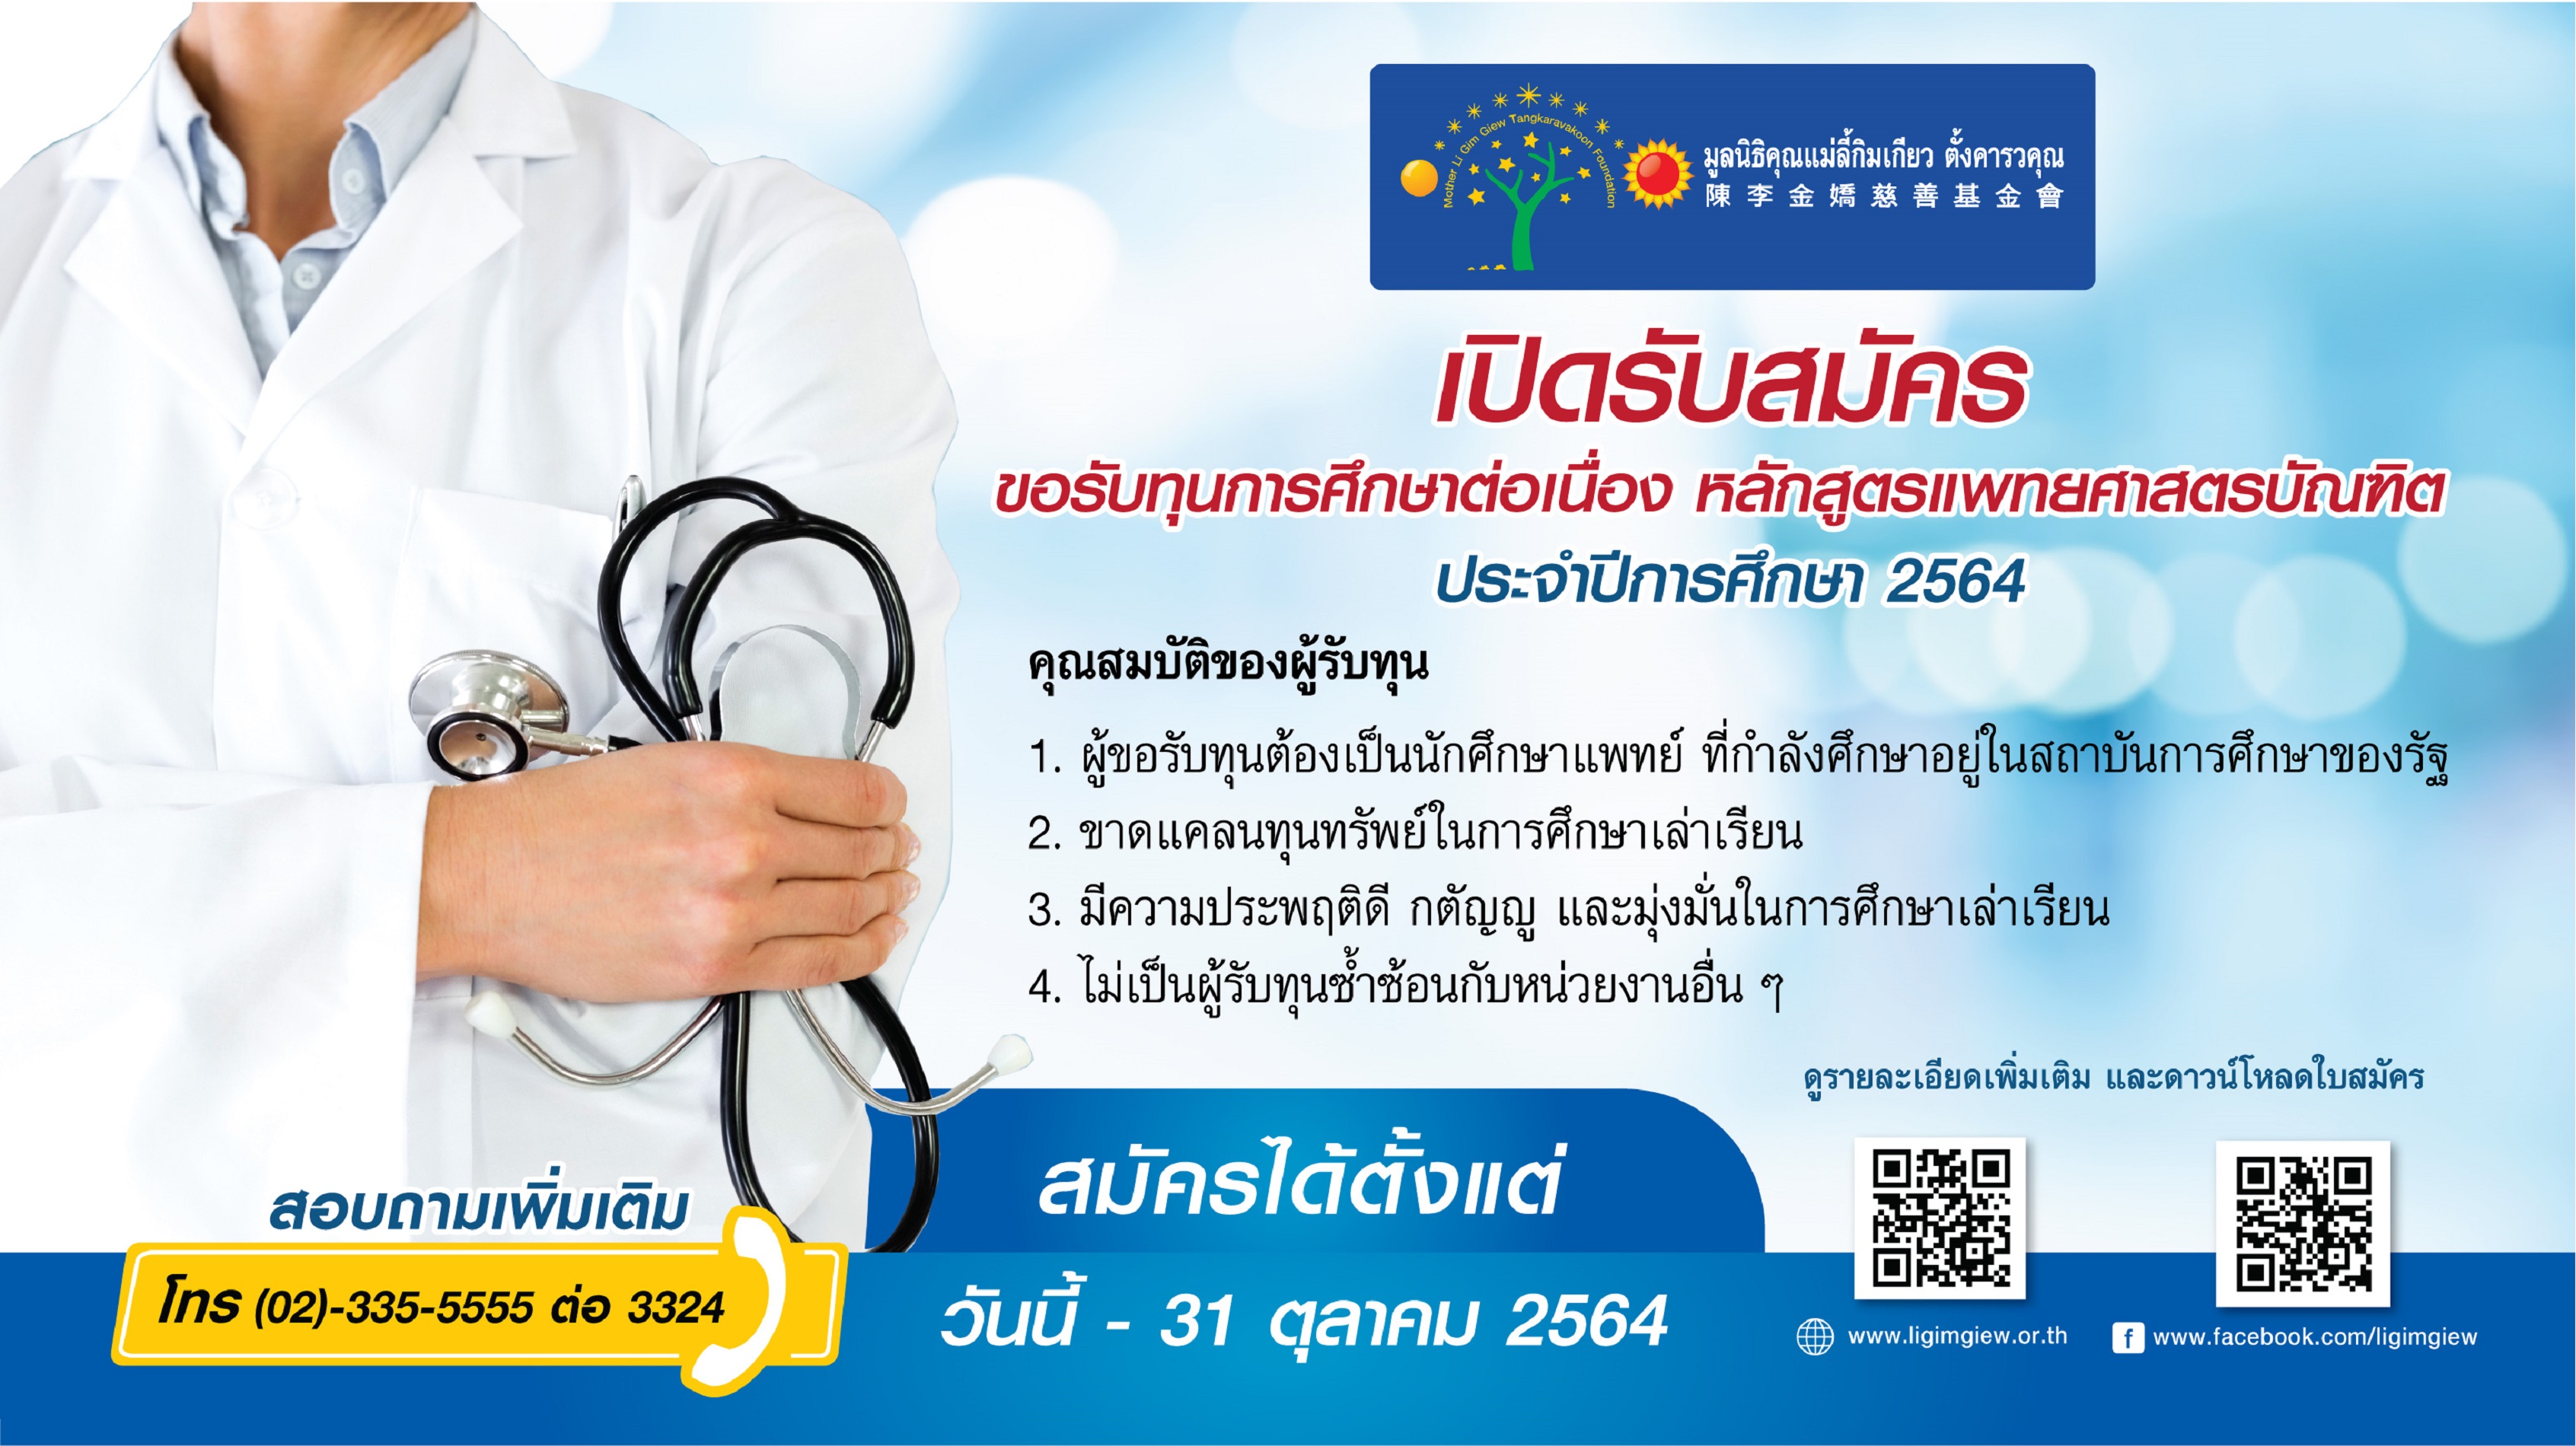 เปิดรับสมัครทุนการศึกษา หลักสูตรแพทยศาสตรบัณฑิต ประจำปีการศึกษา 2564